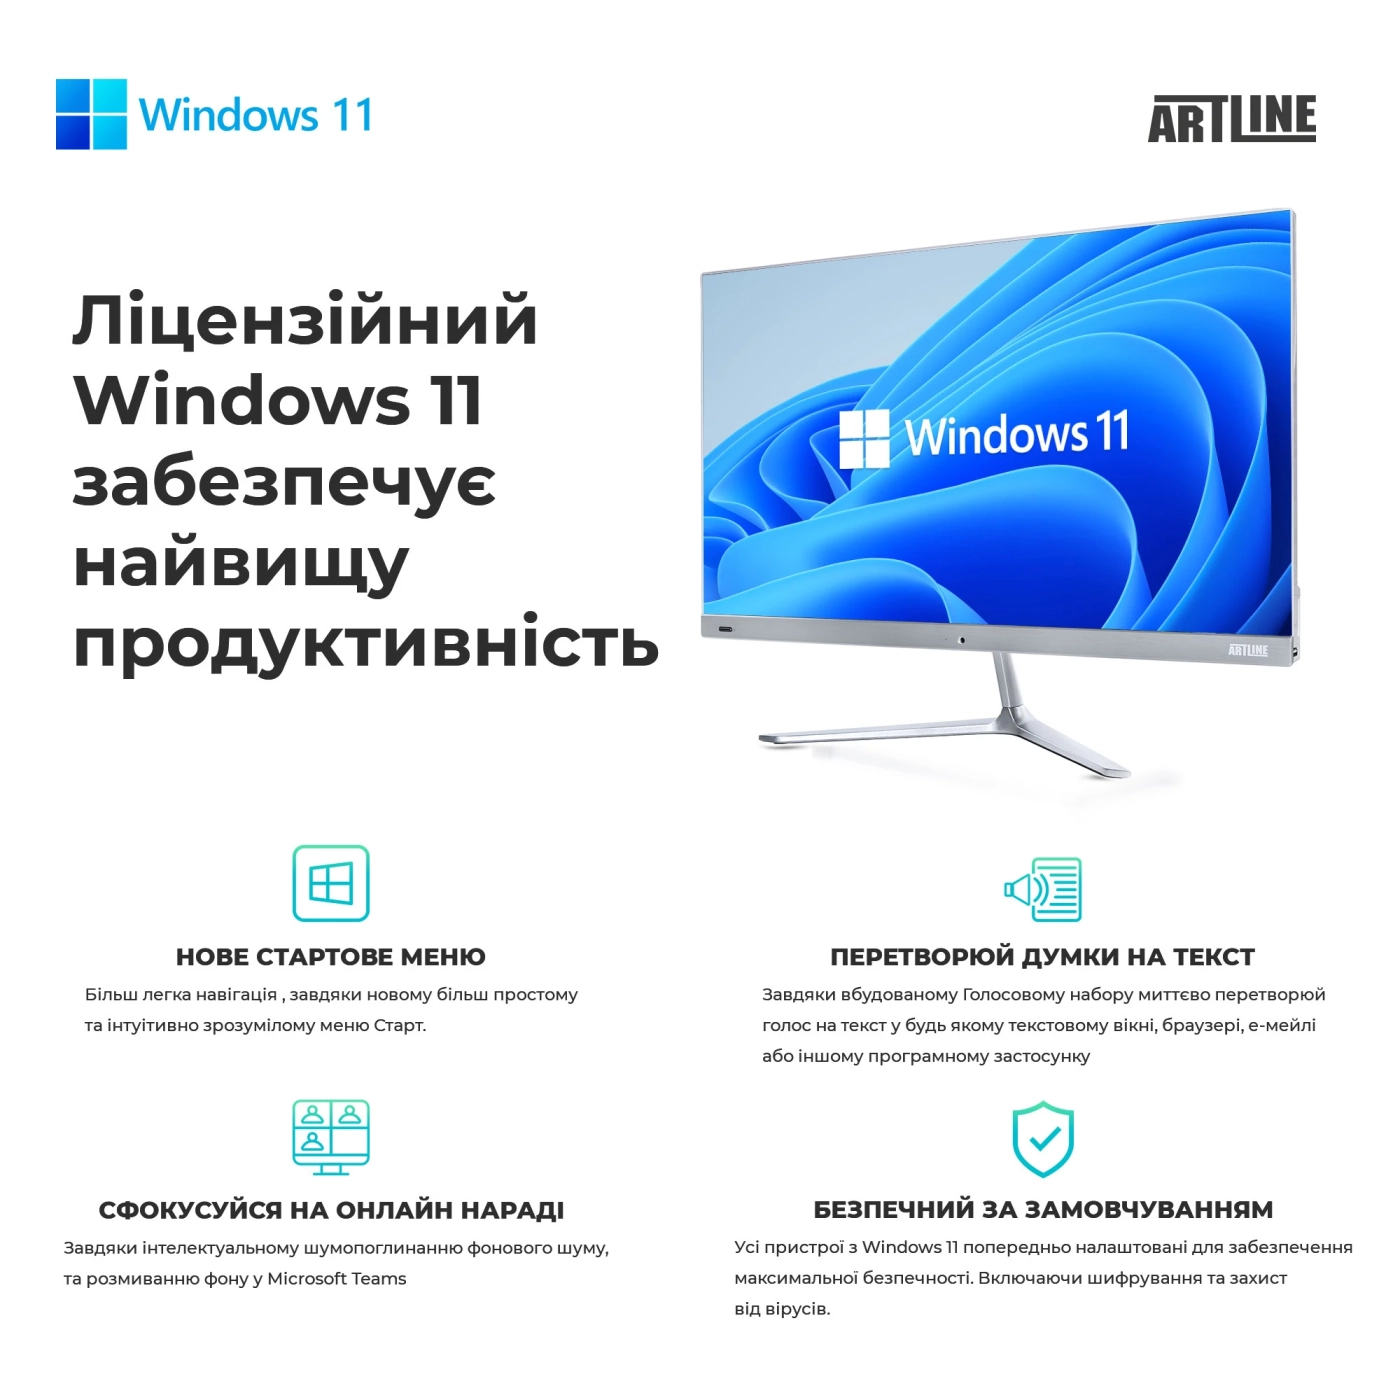 Купить Рабочая станция ARTLINE WorkStation W99 Windows 11 Pro (W99v62Win) - фото 10